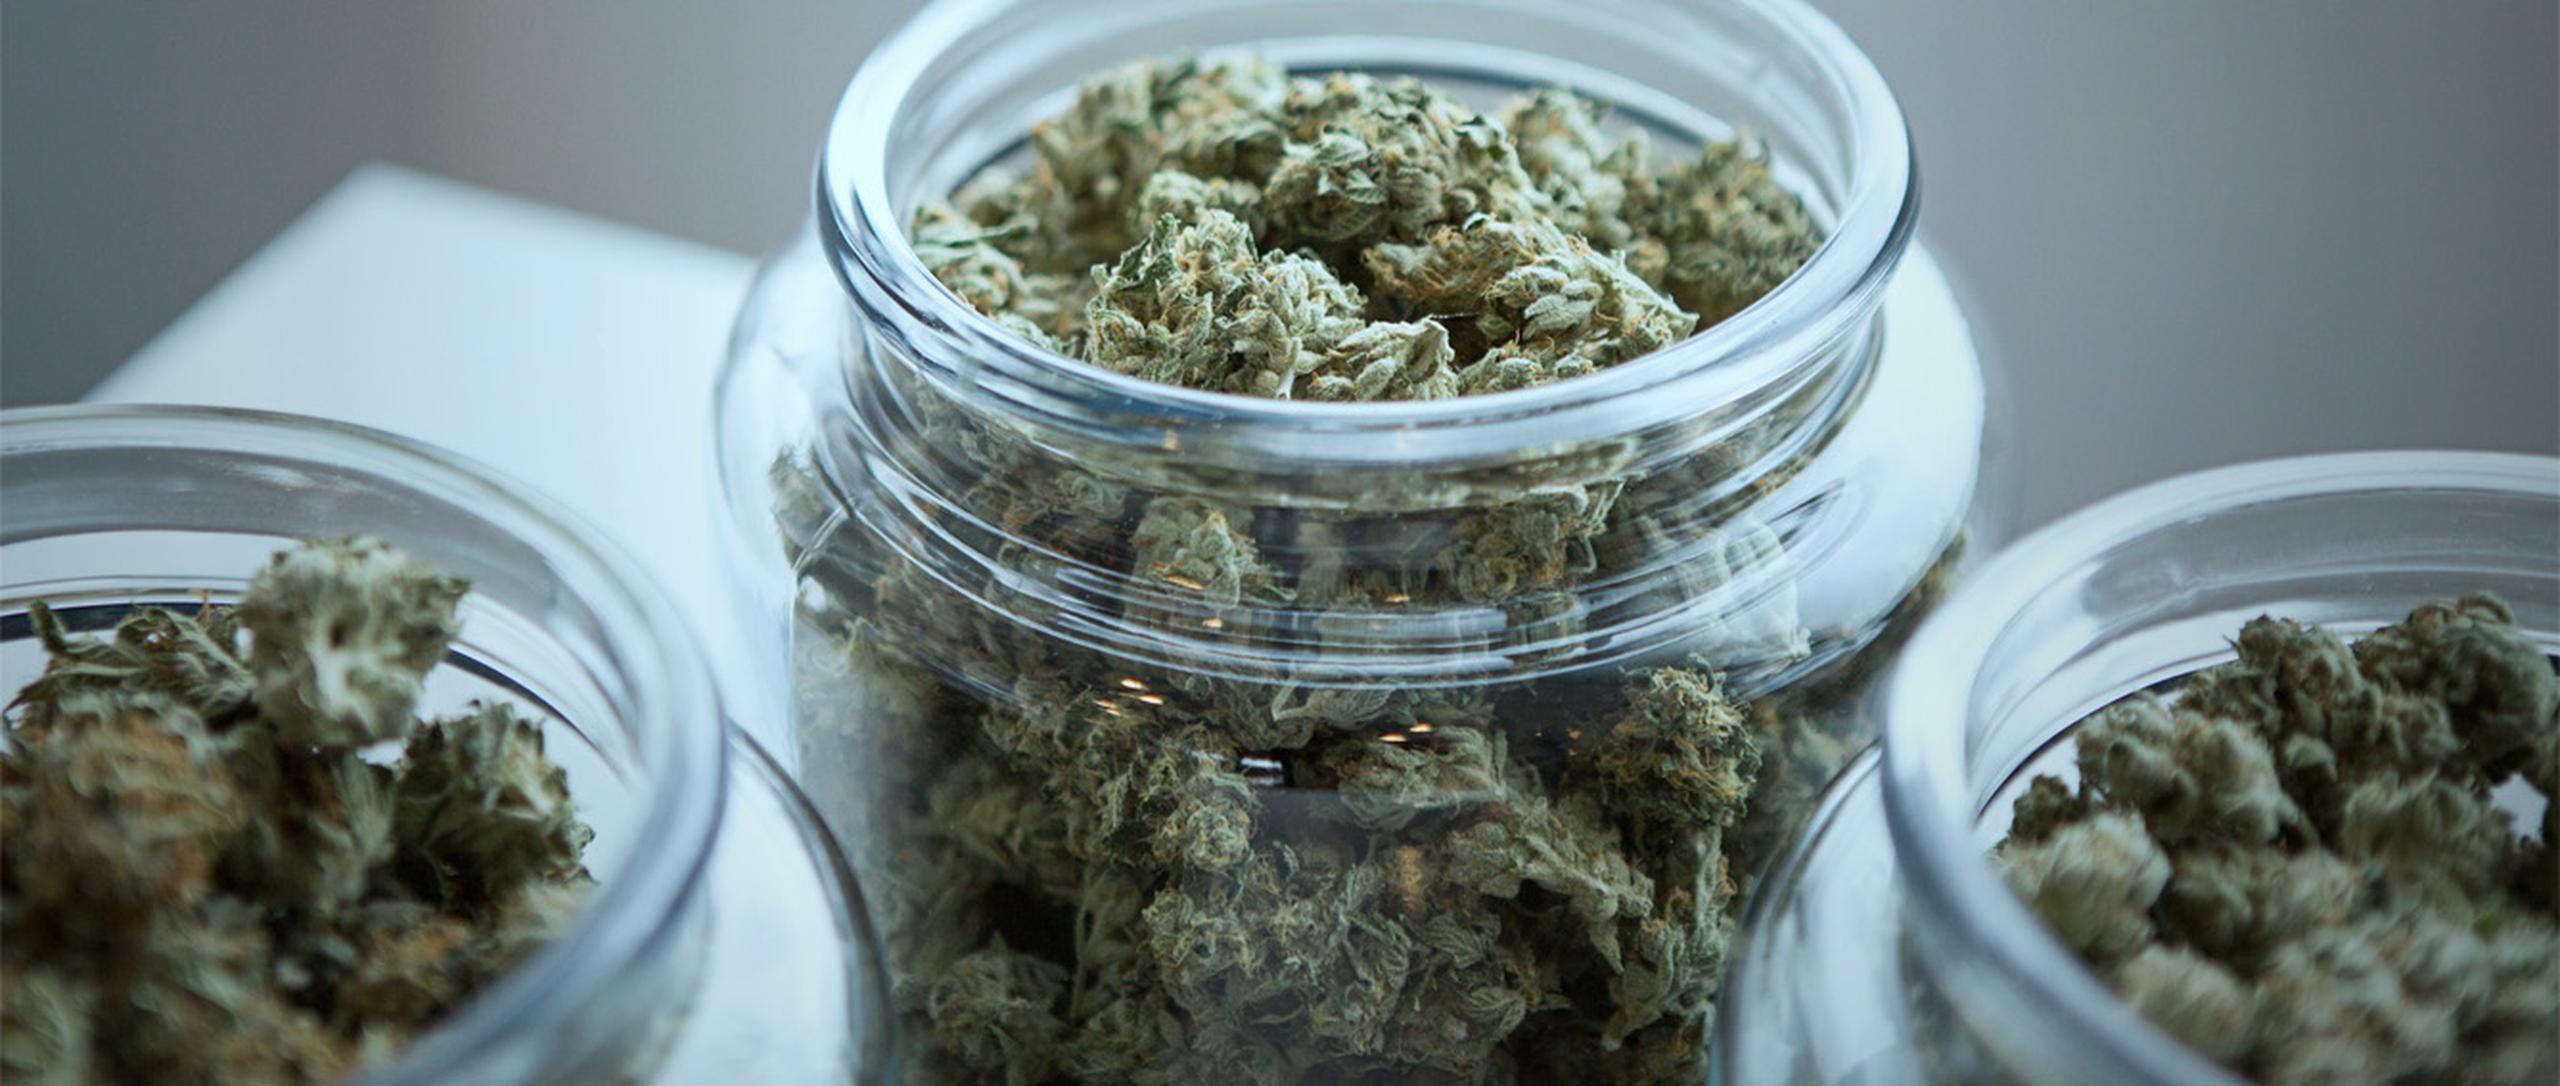 De acuerdo con algunos estudiosos, el cannabis medicinal debe considerarse como una alternativa de tratamiento dado que tiene mucho potencial. (Get Budding / Unsplash)